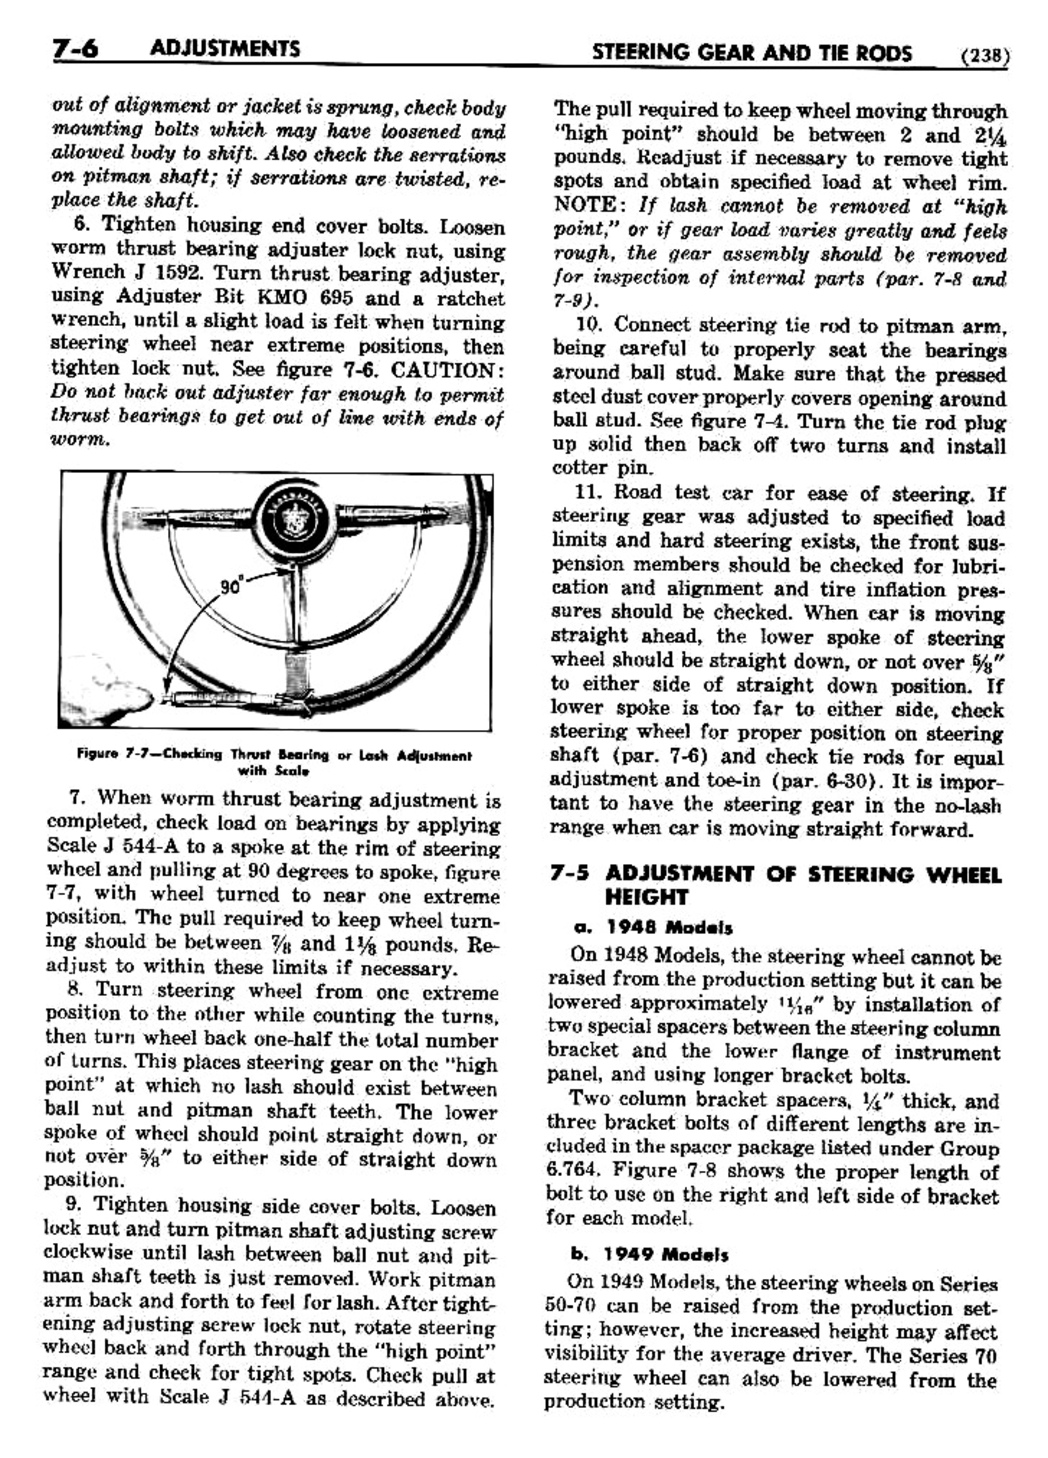 n_08 1948 Buick Shop Manual - Steering-006-006.jpg